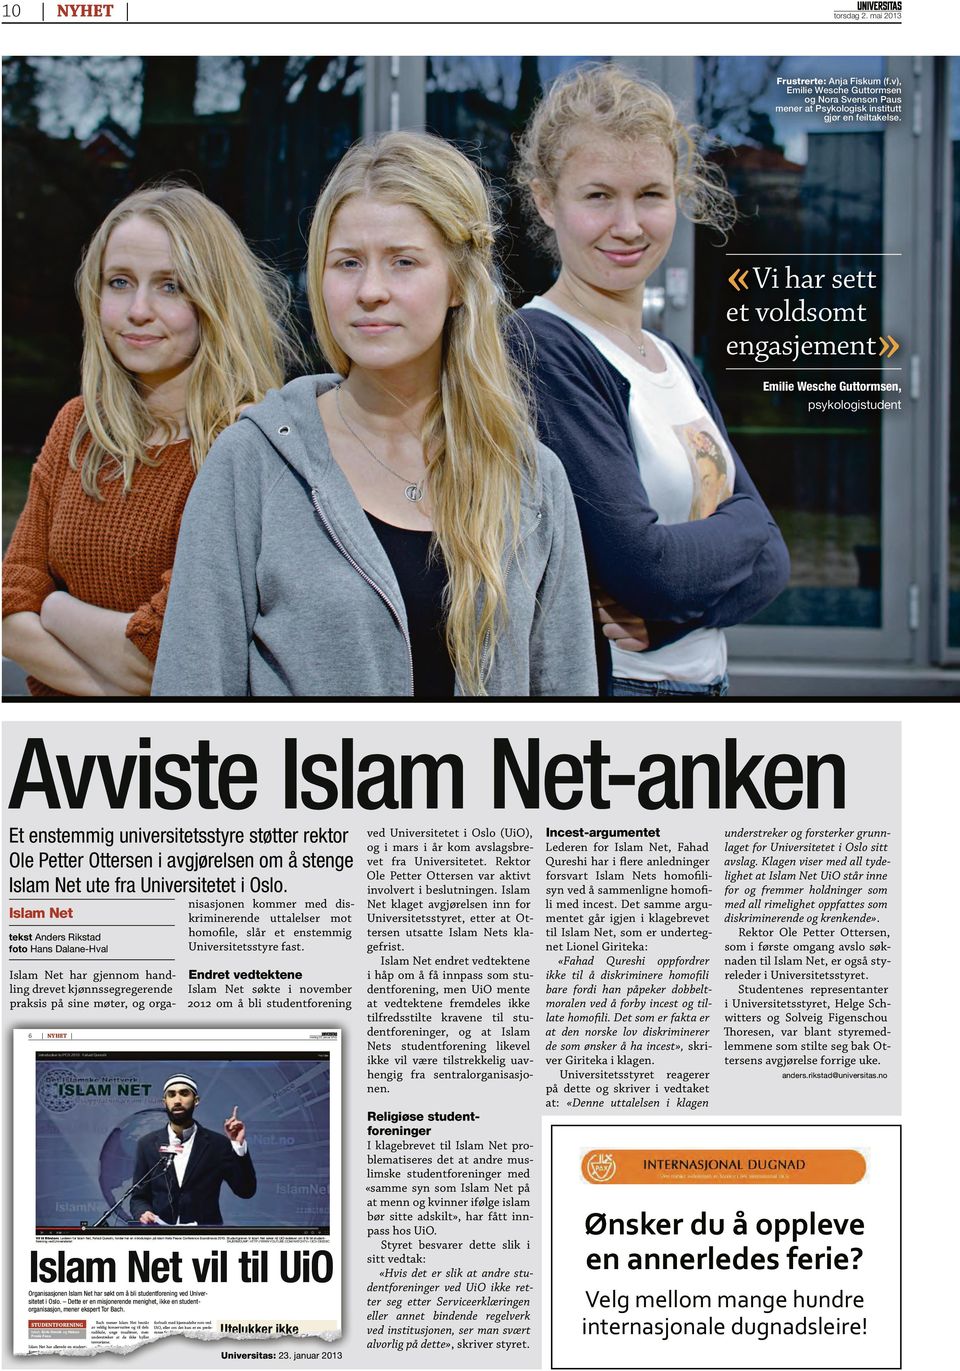 Islam Net ute fra Universitetet i Oslo. ved Universitetet i Oslo (UiO), og i mars i år kom avslagsbrevet fra Universitetet. Rektor Ole Petter Ottersen var aktivt involvert i beslutningen.